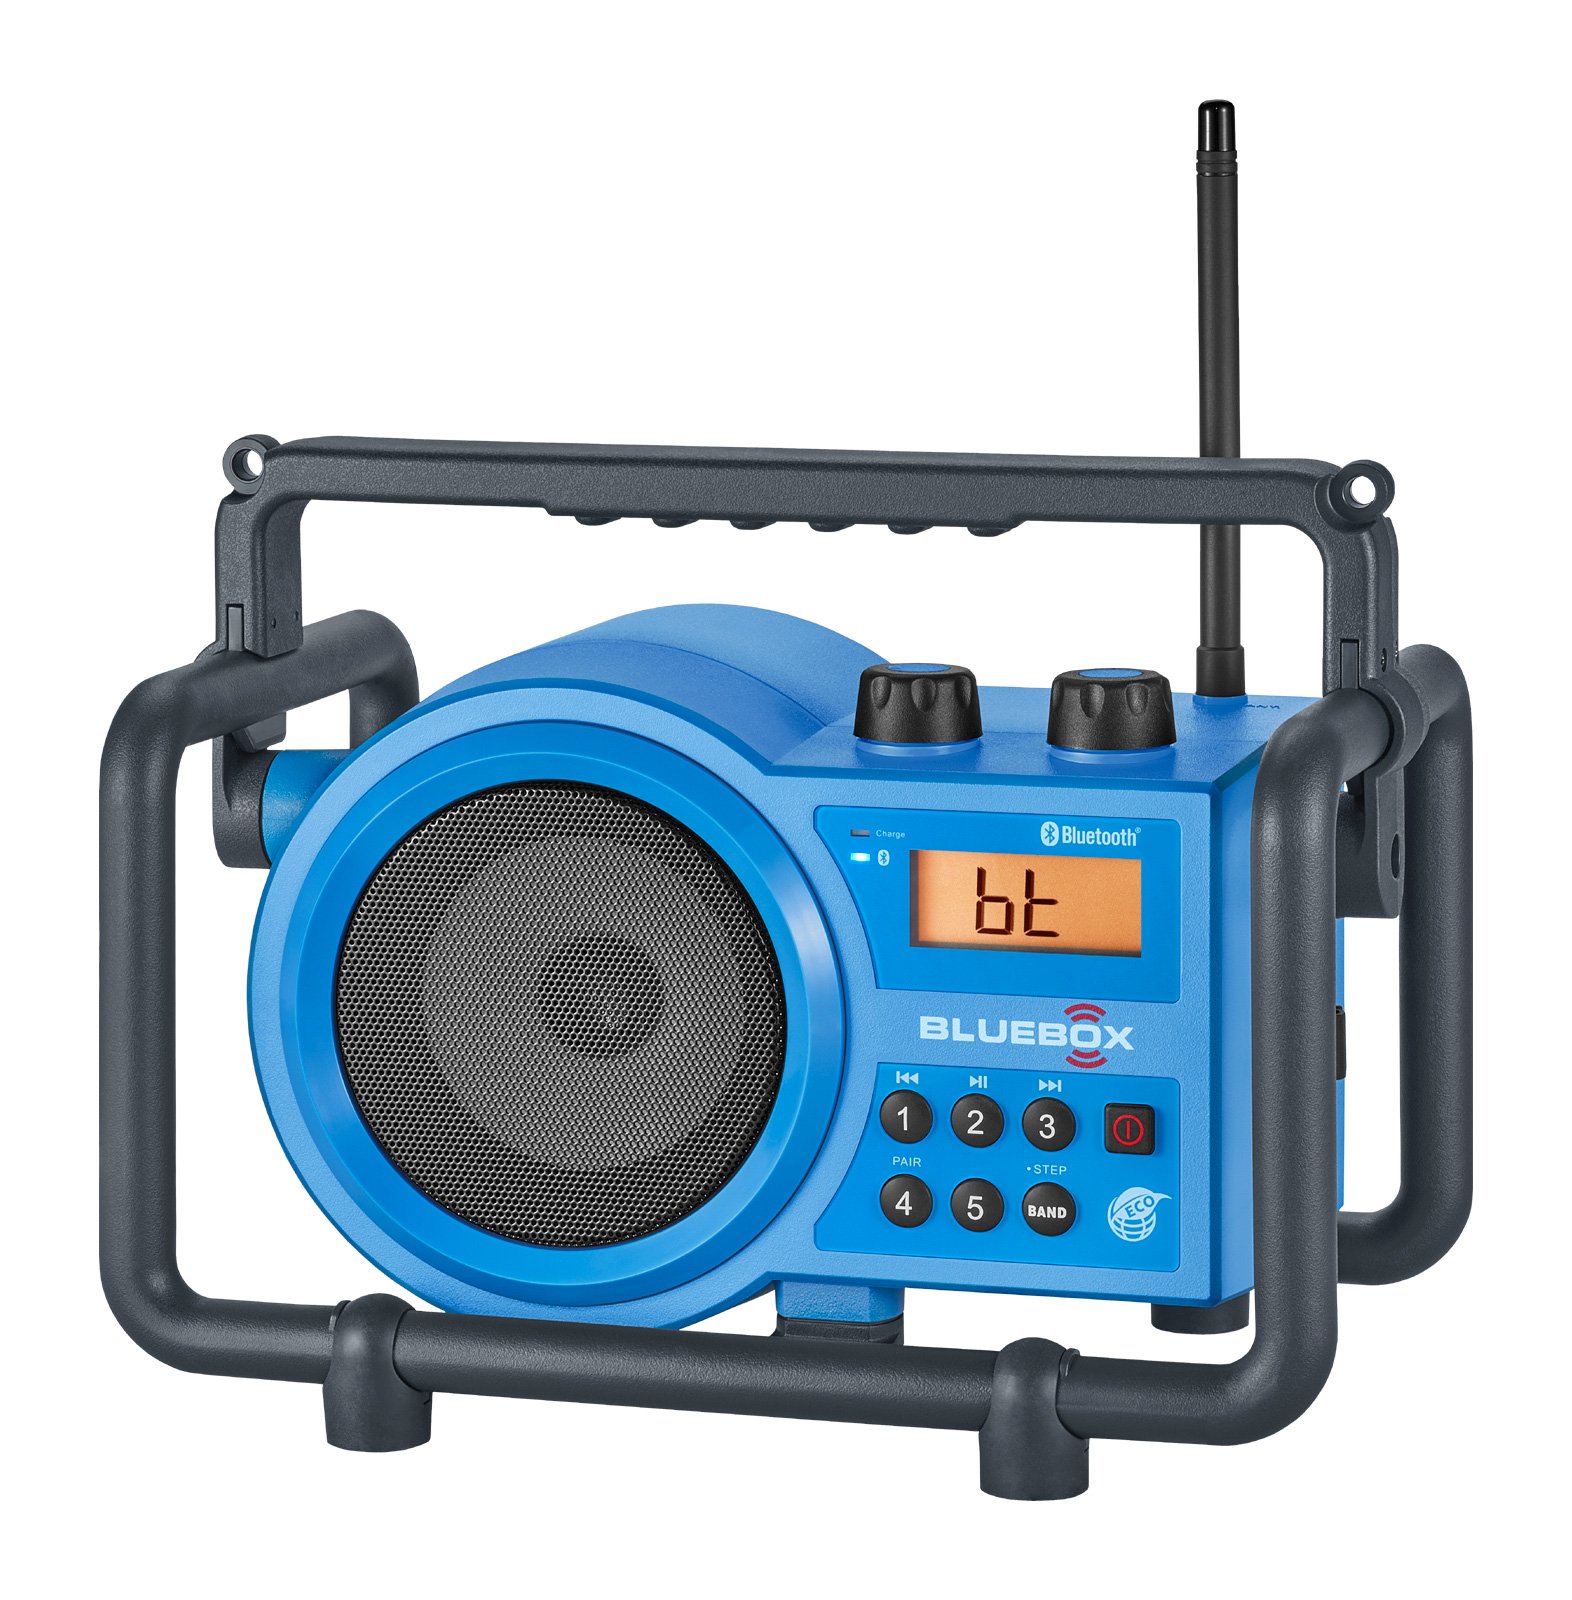 Sangean BB-100 BlueBox AM/FM Ultra-Rugged Digital Receiver with Bluetooth, Blue, 12.4